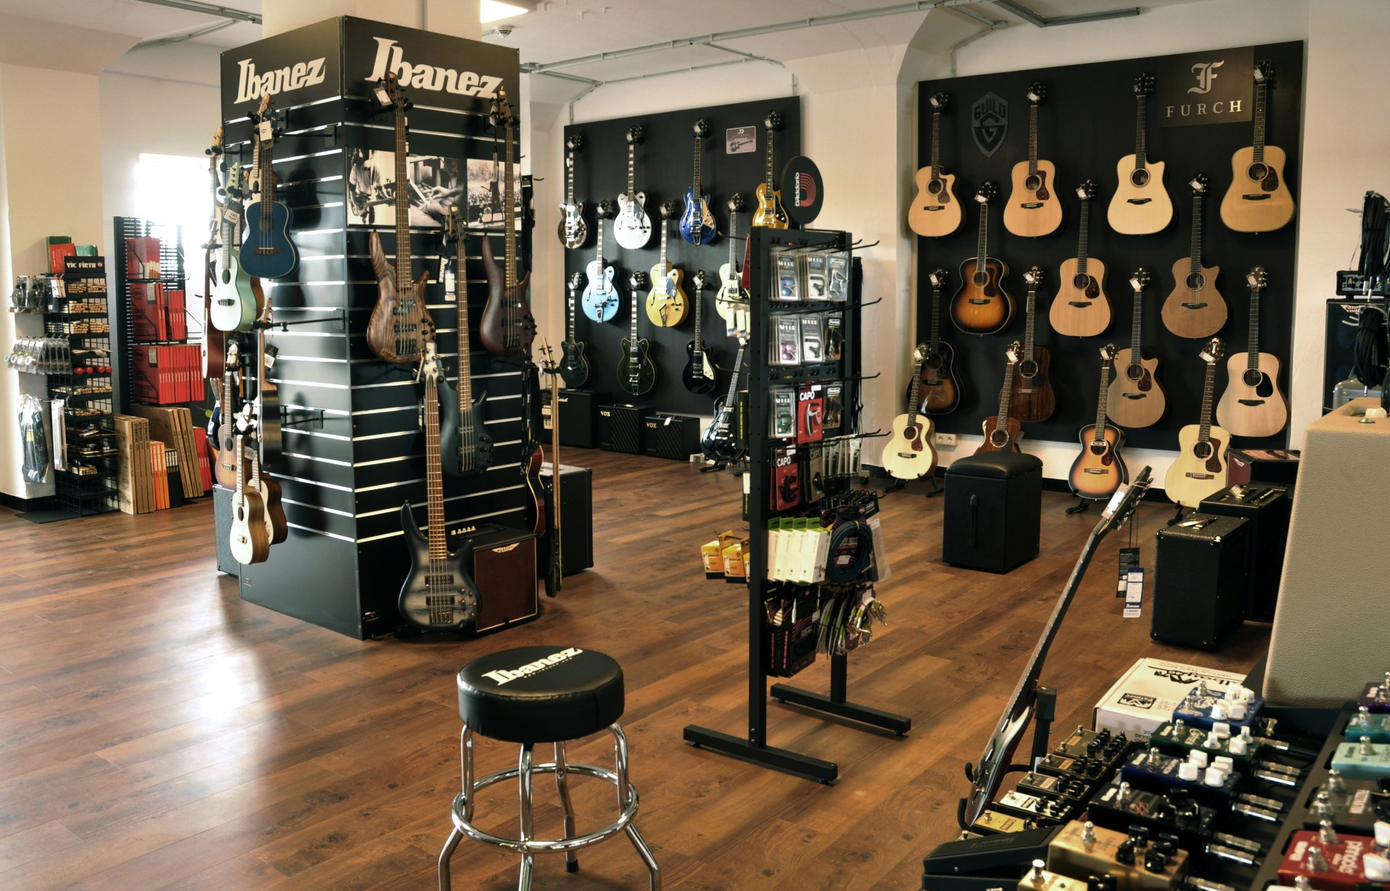 Der Verkaufsraum des Ladens mit Musikinstrumenten und Zubehör